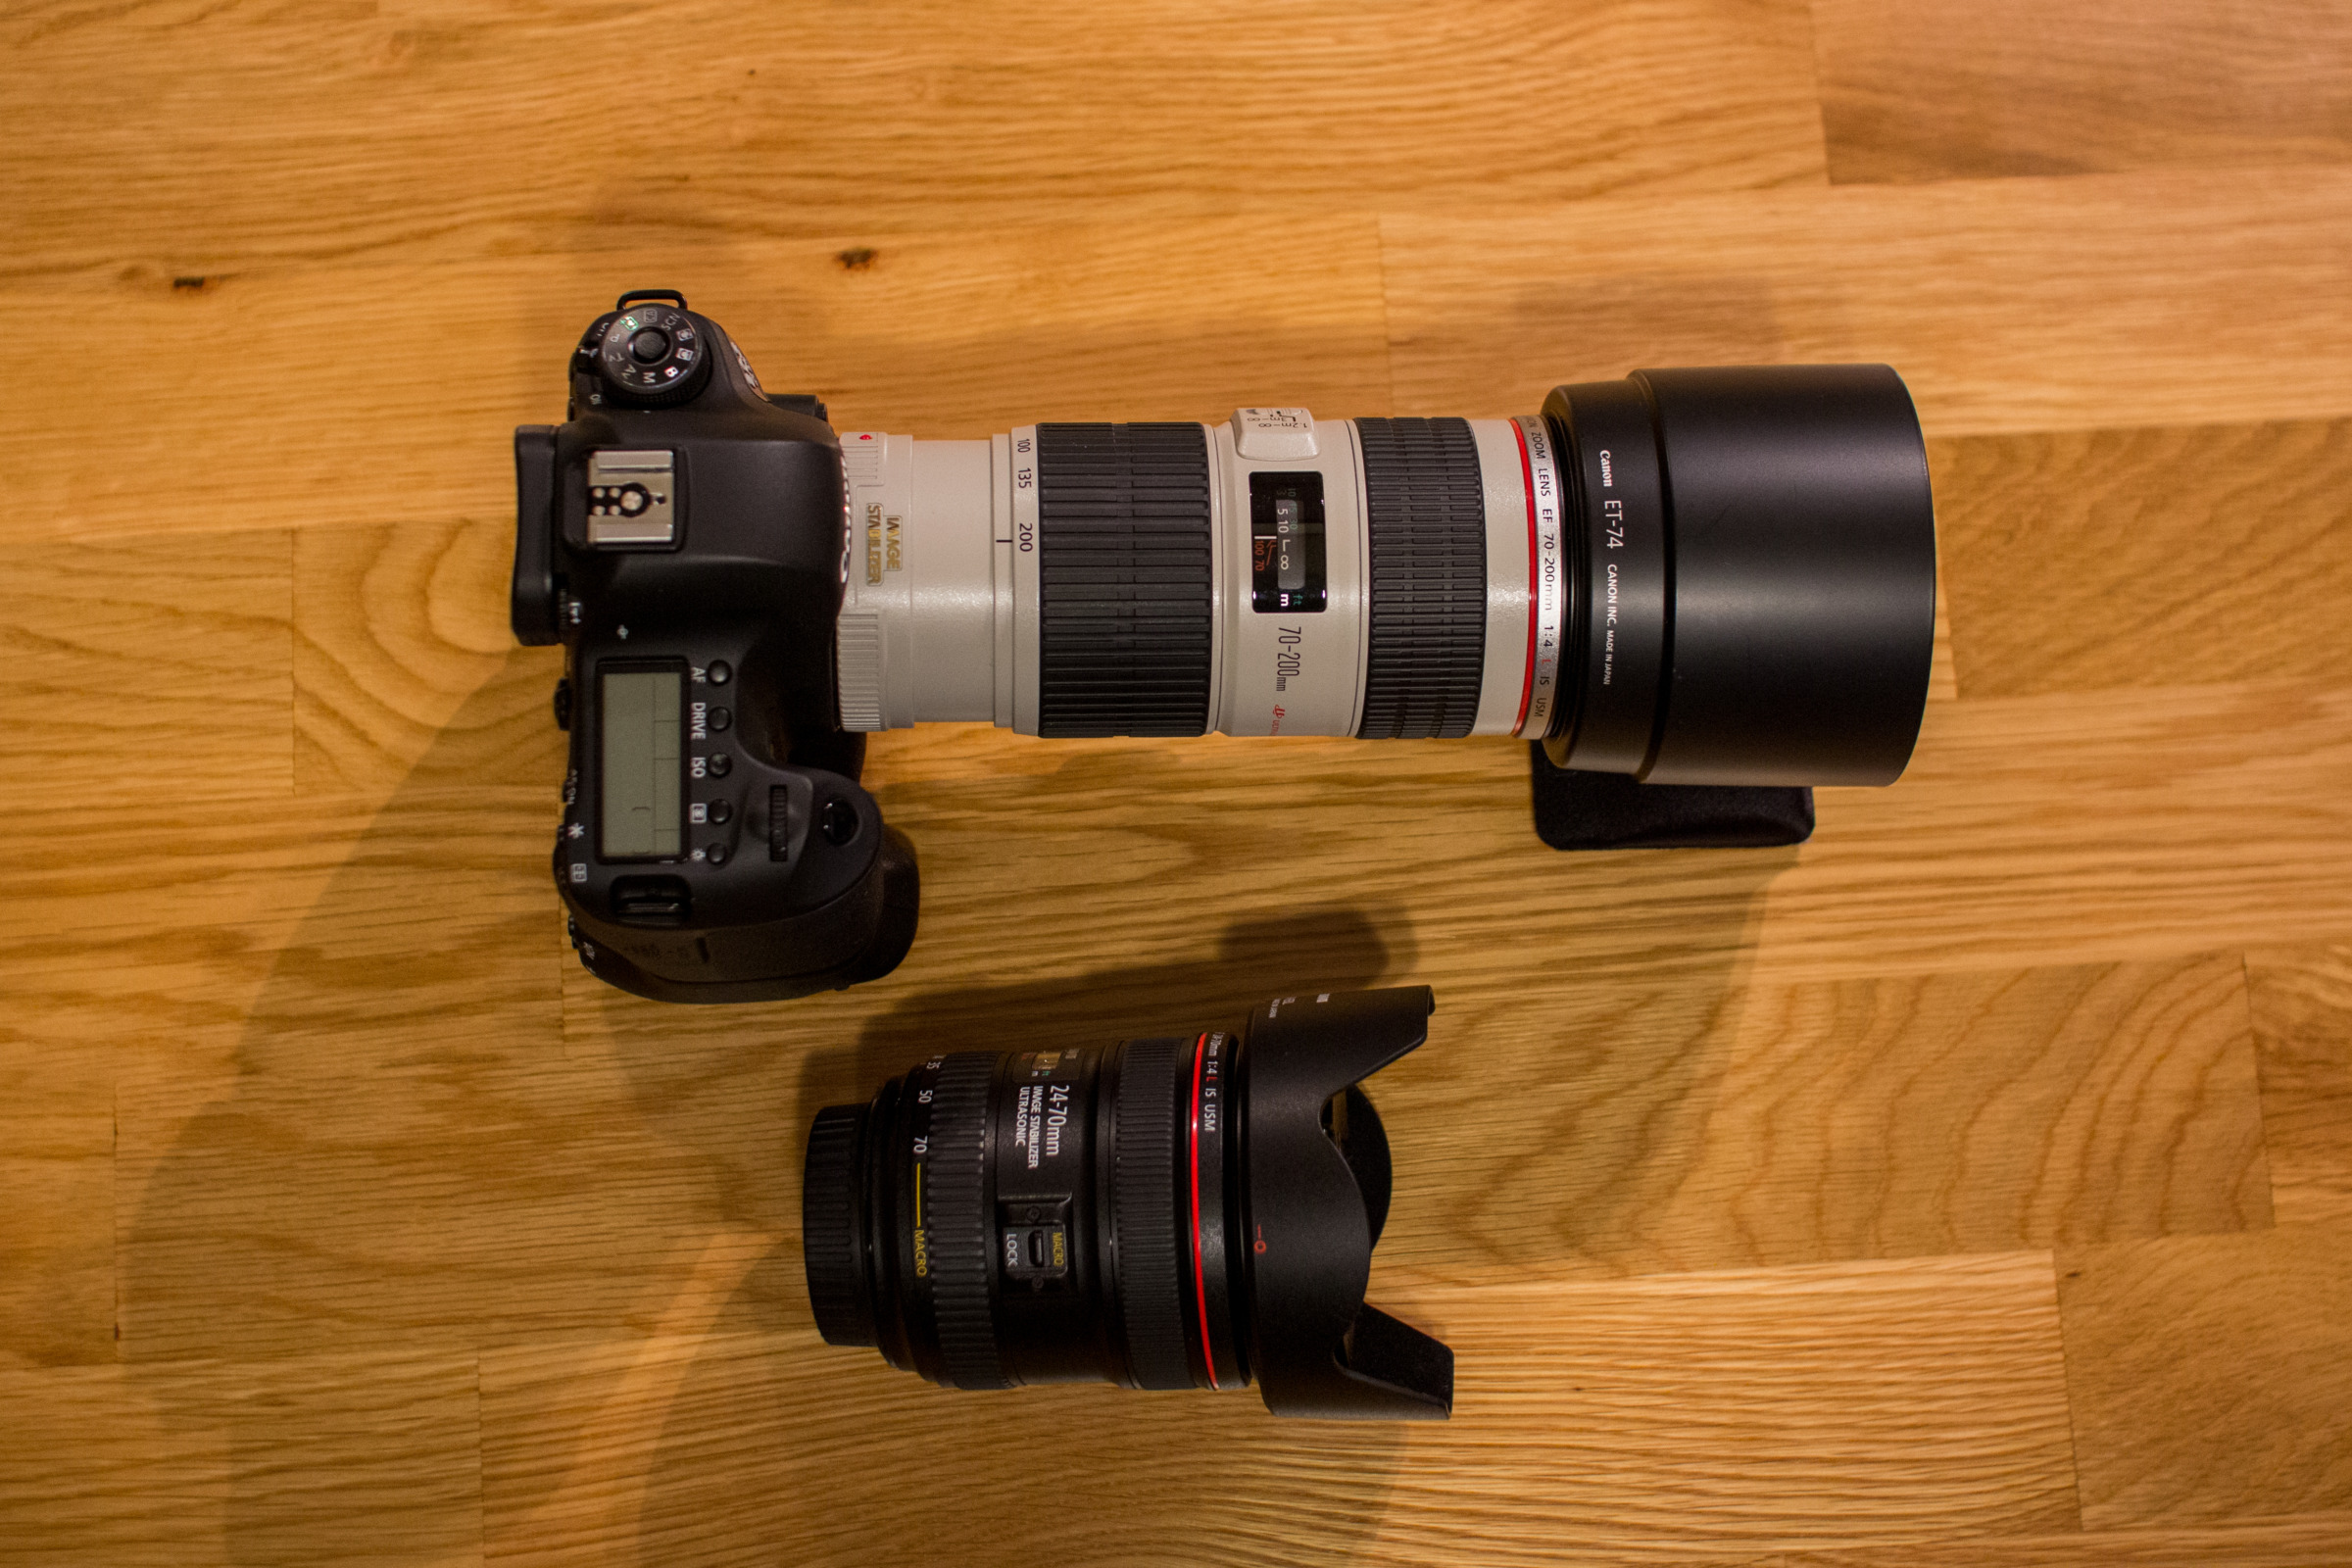 Canon EOS 6D + BG-E13 + EF70-200mm F4L IS USM / EF24-70mm F4L IS USM